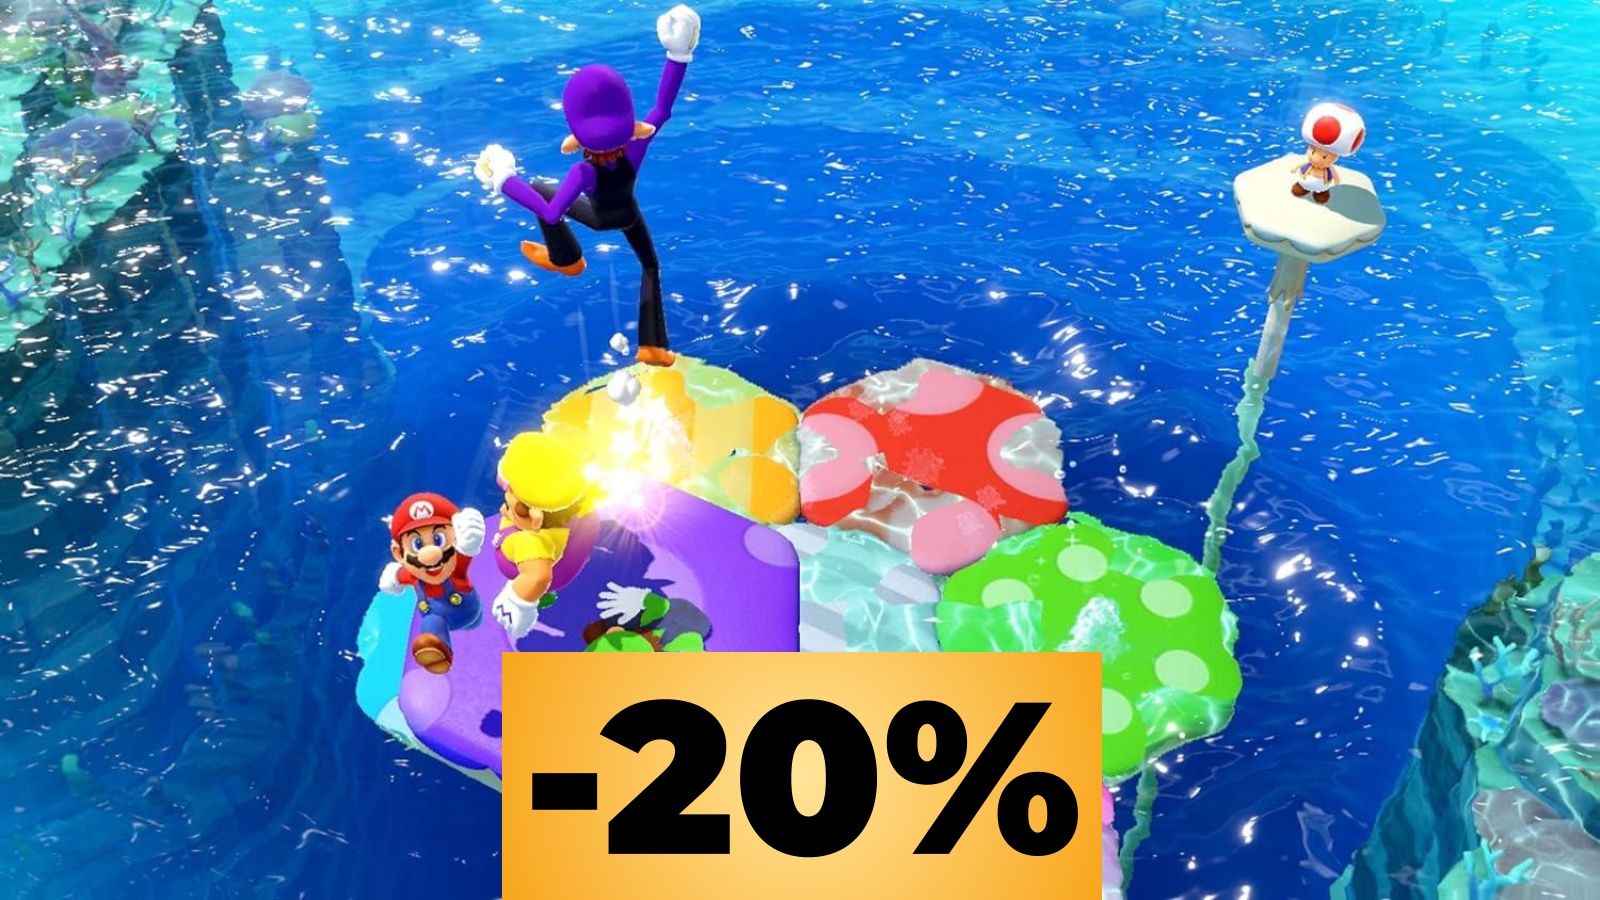 Mario Party Superstars per Nintendo Switch è in sconto al prezzo minimo storico su Amazon Italia